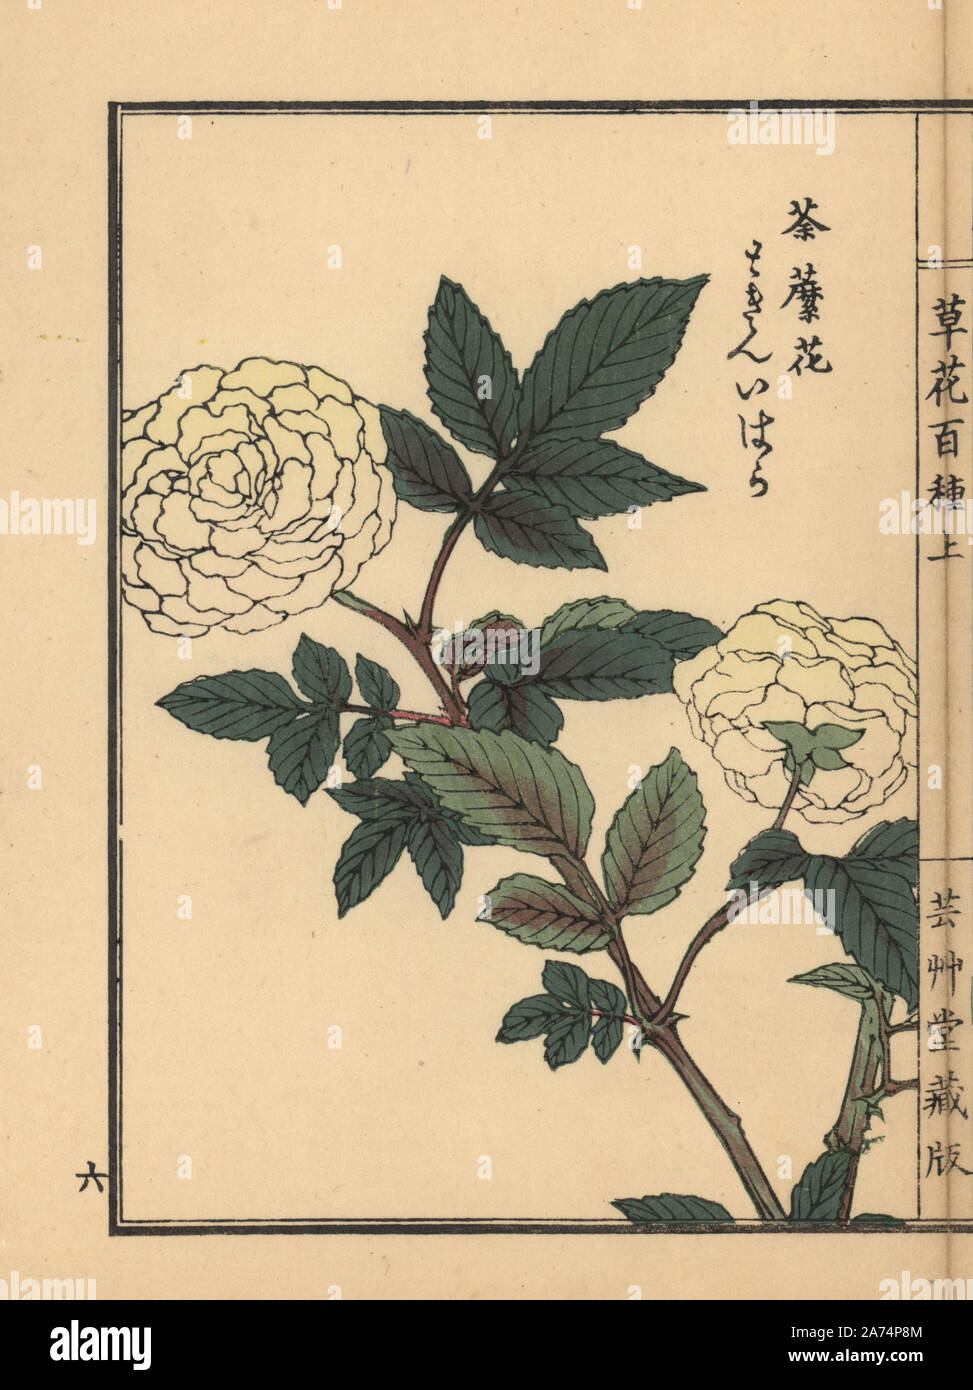 Tokin' ibara or roseleaf bramble, Rubus rosifolius. Handcoloured woodblock print by Kono Bairei from Kusa Bana Hyakushu (One Hundred Varieties of Flowers), Tokyo, Yamada, 1901. Stock Photo